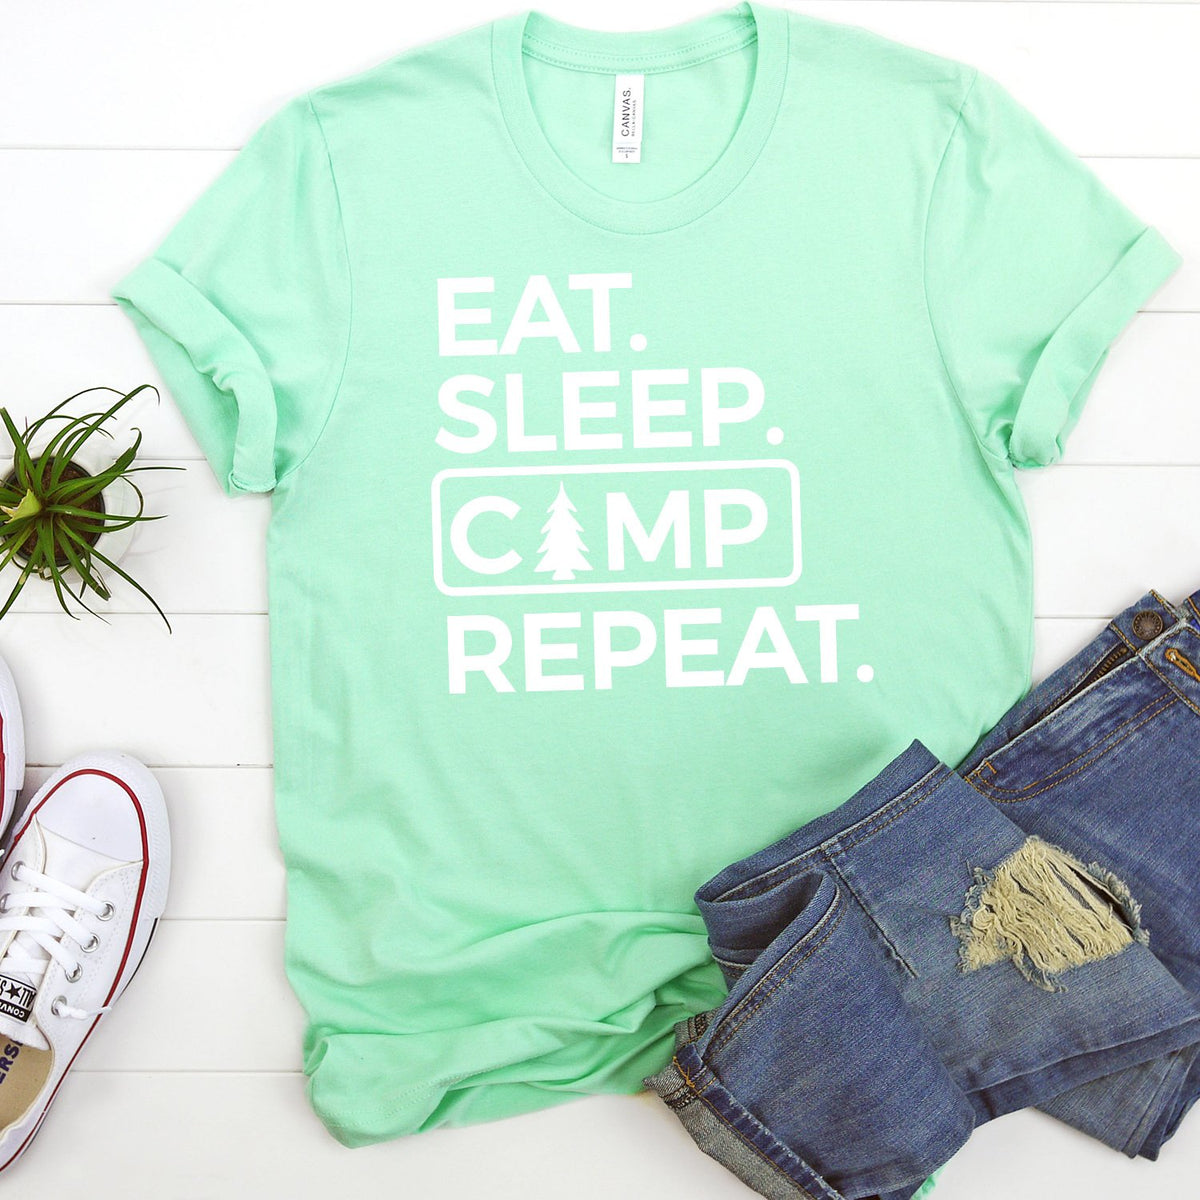 Eat Sleep Camp Repeat - Short Sleeve Tee Shirt